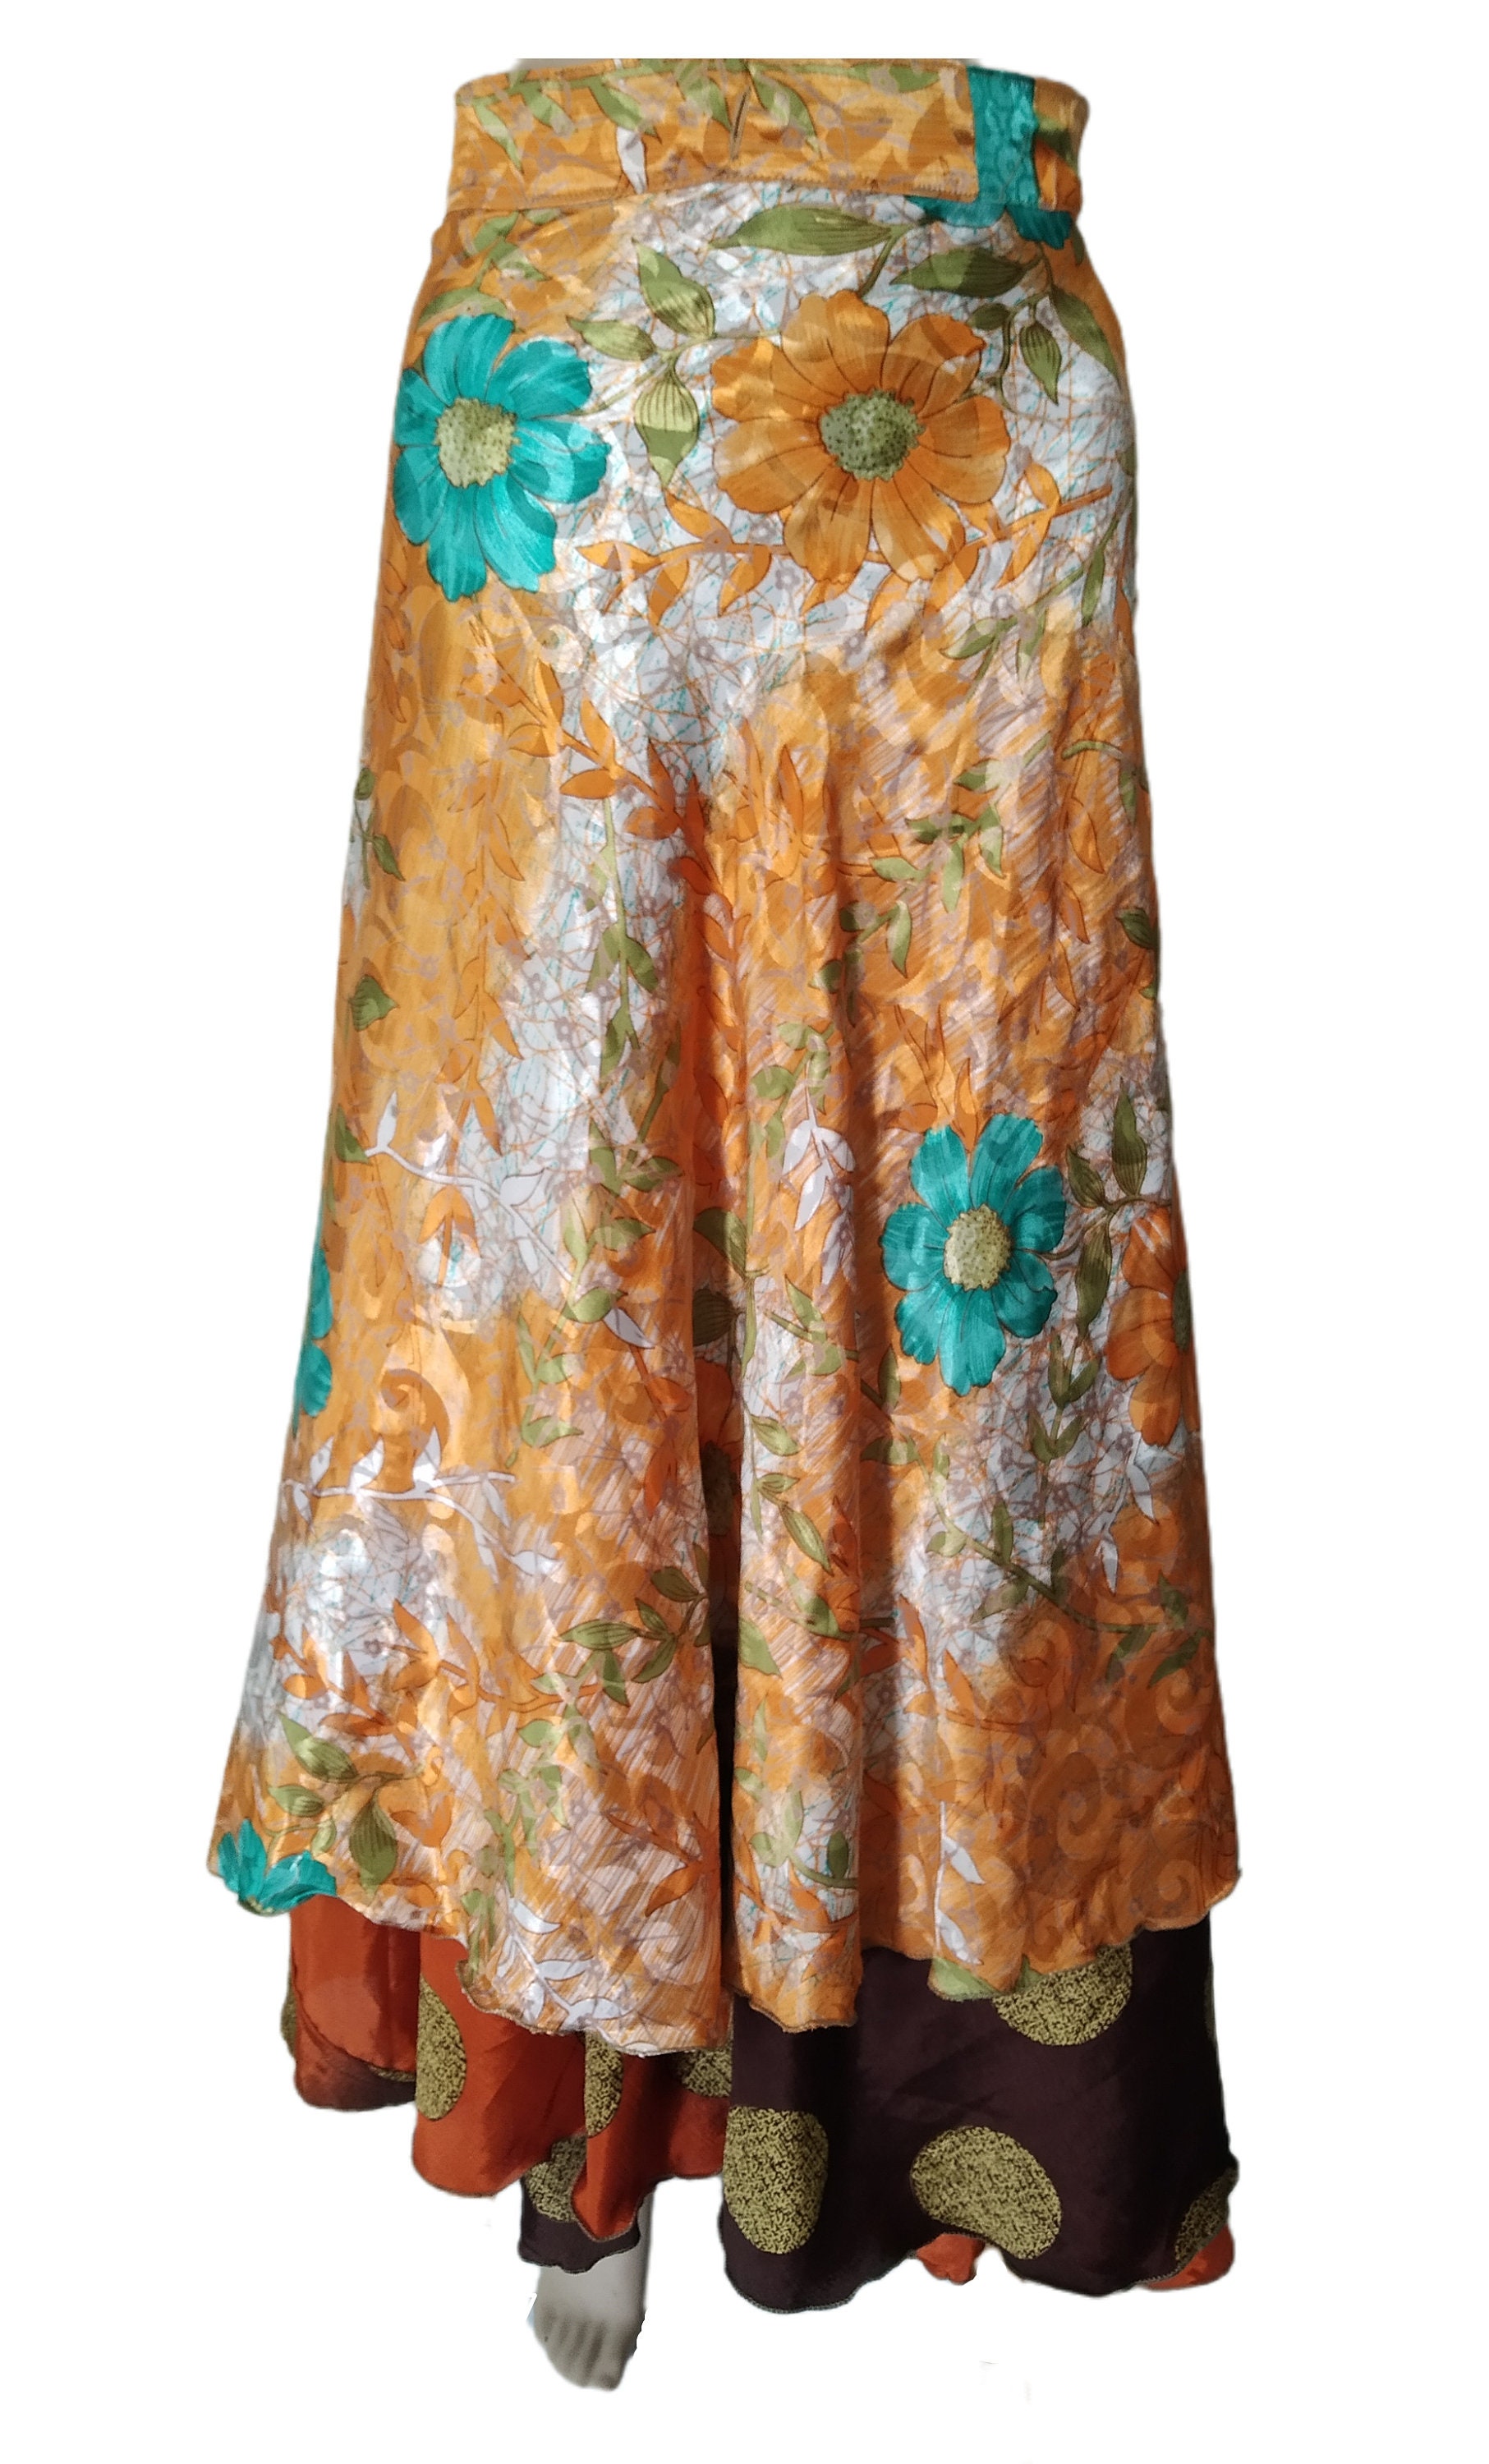 Floral Bedruckt Rund Vintage 2 Layer Rock Sari Wendezauber Wickelrock Hippie Boho Damen Maxi Kleid von RudranshHandicrafts